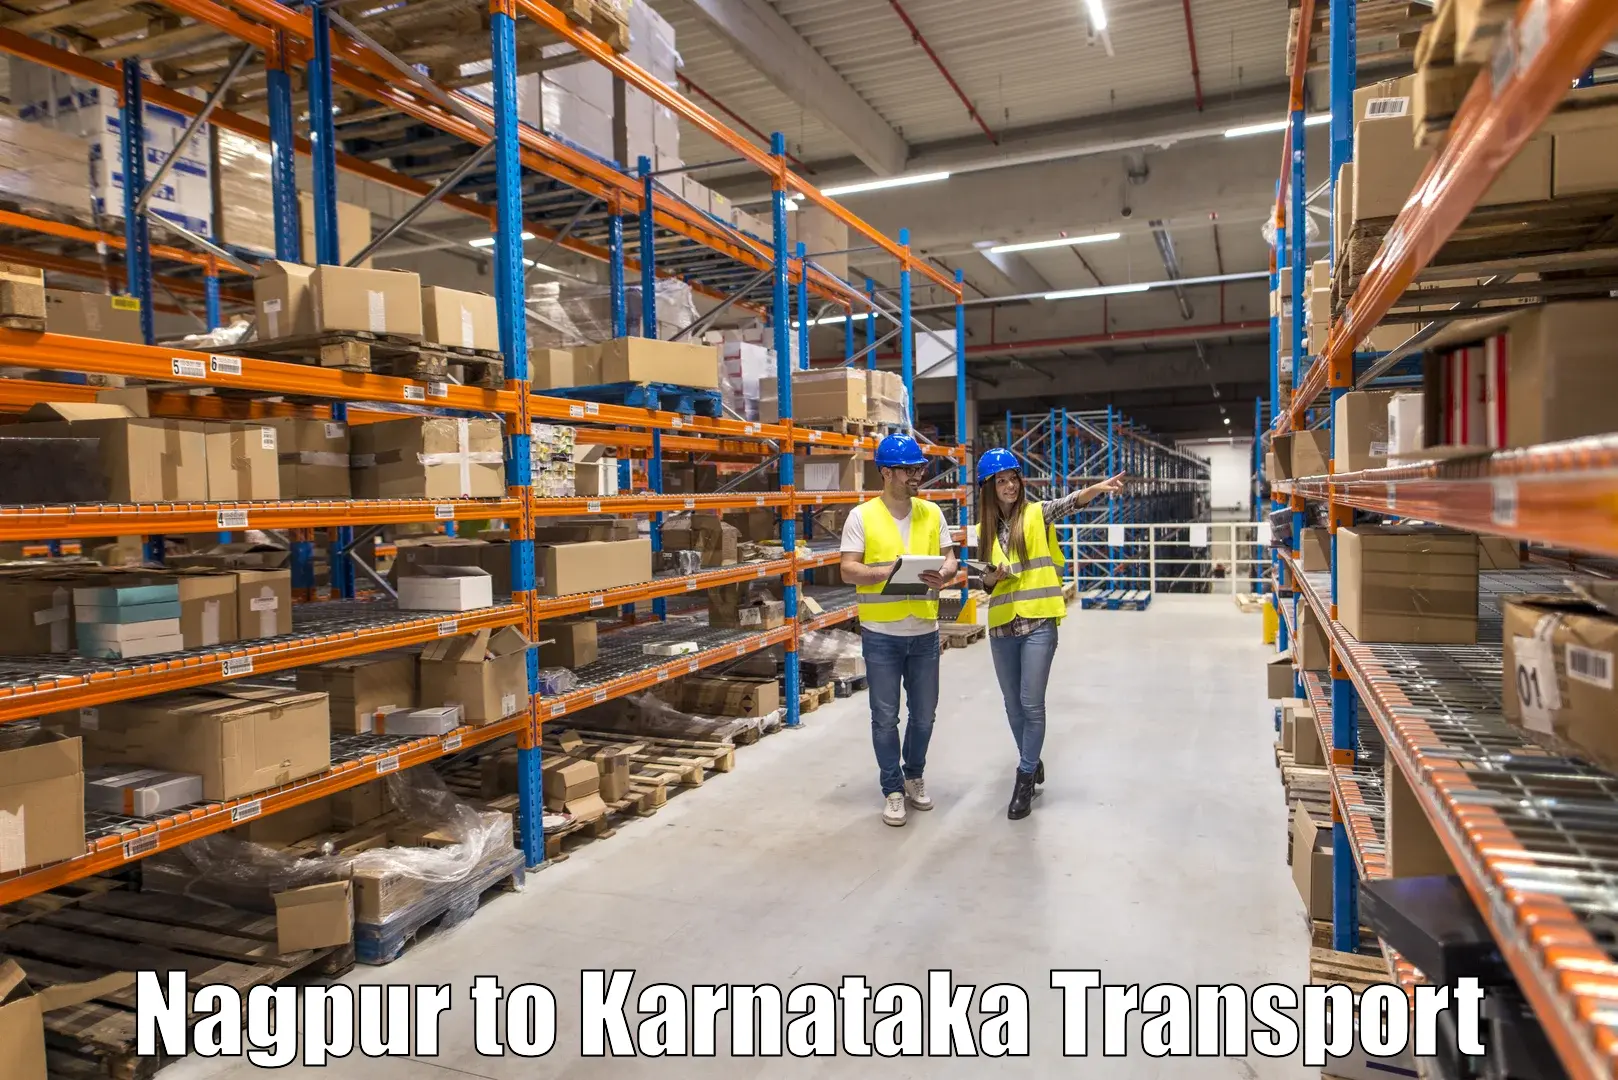 Two wheeler parcel service Nagpur to Kalaburagi